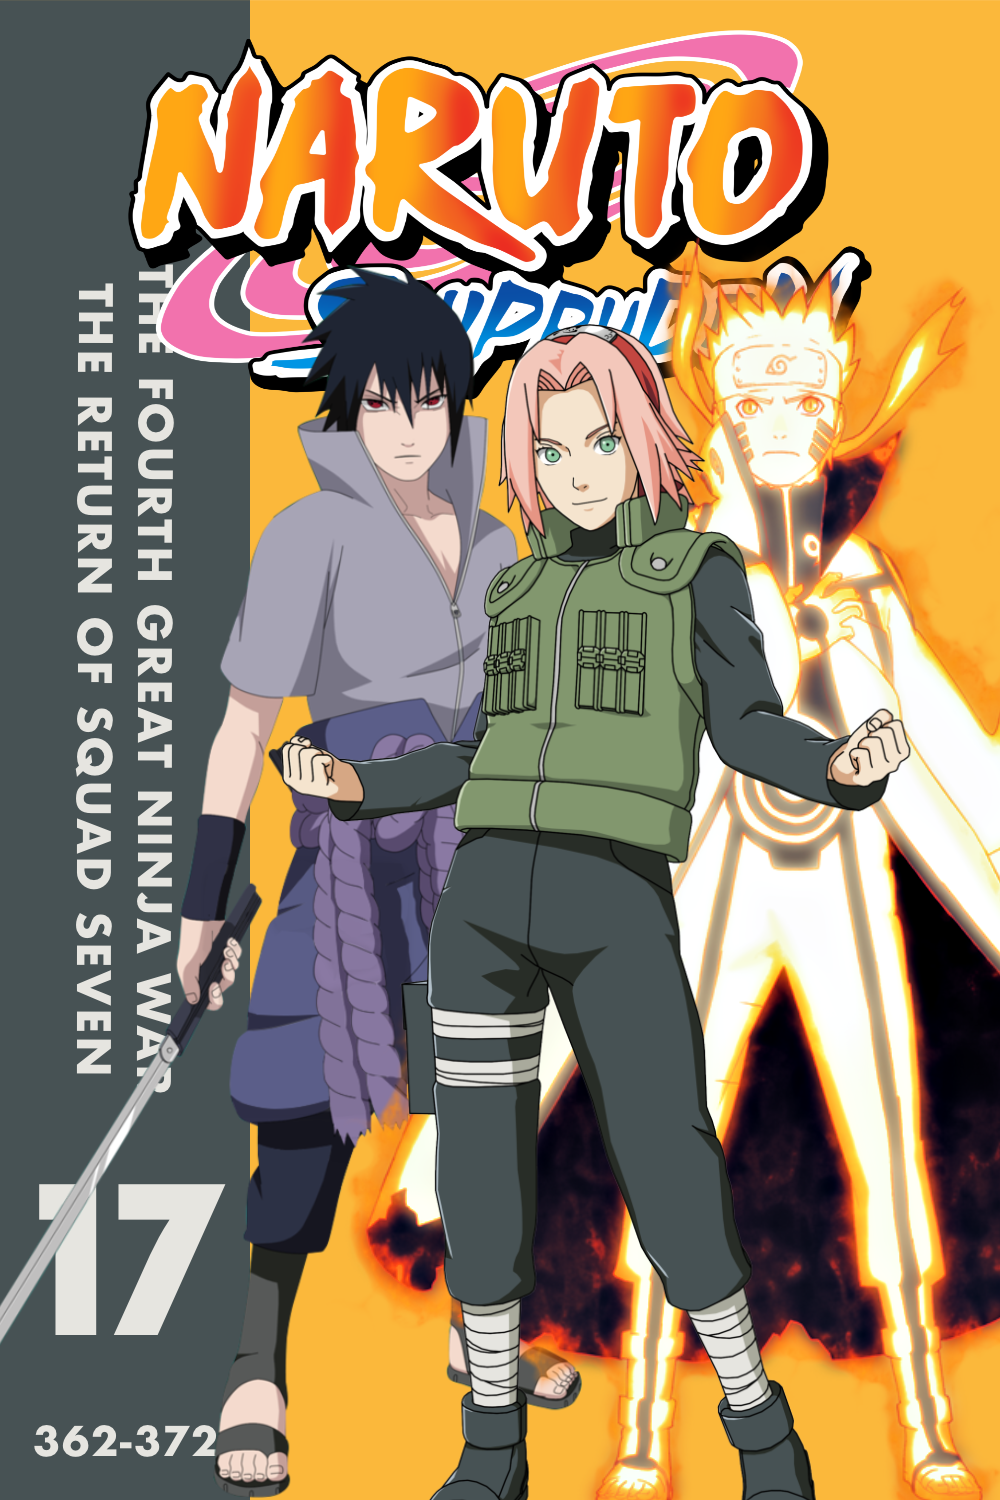 Naruto: Shippuden (season 17) - Wikipedia